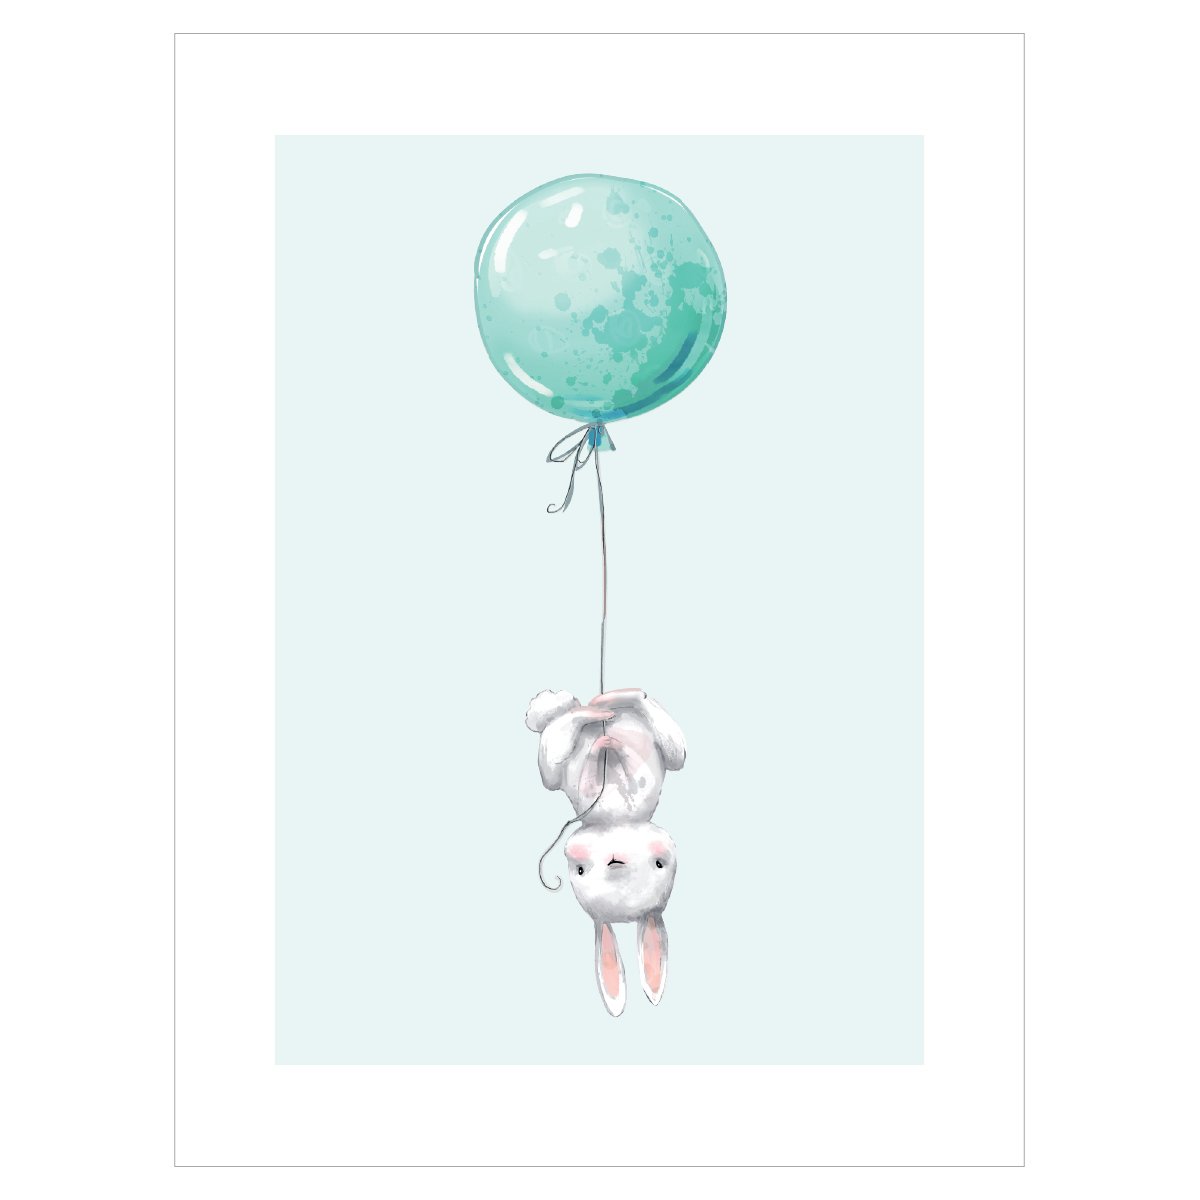 Plakat dla chłopca z króliczkiem trzymającym balon na miętowym tle#kolor_mietowy